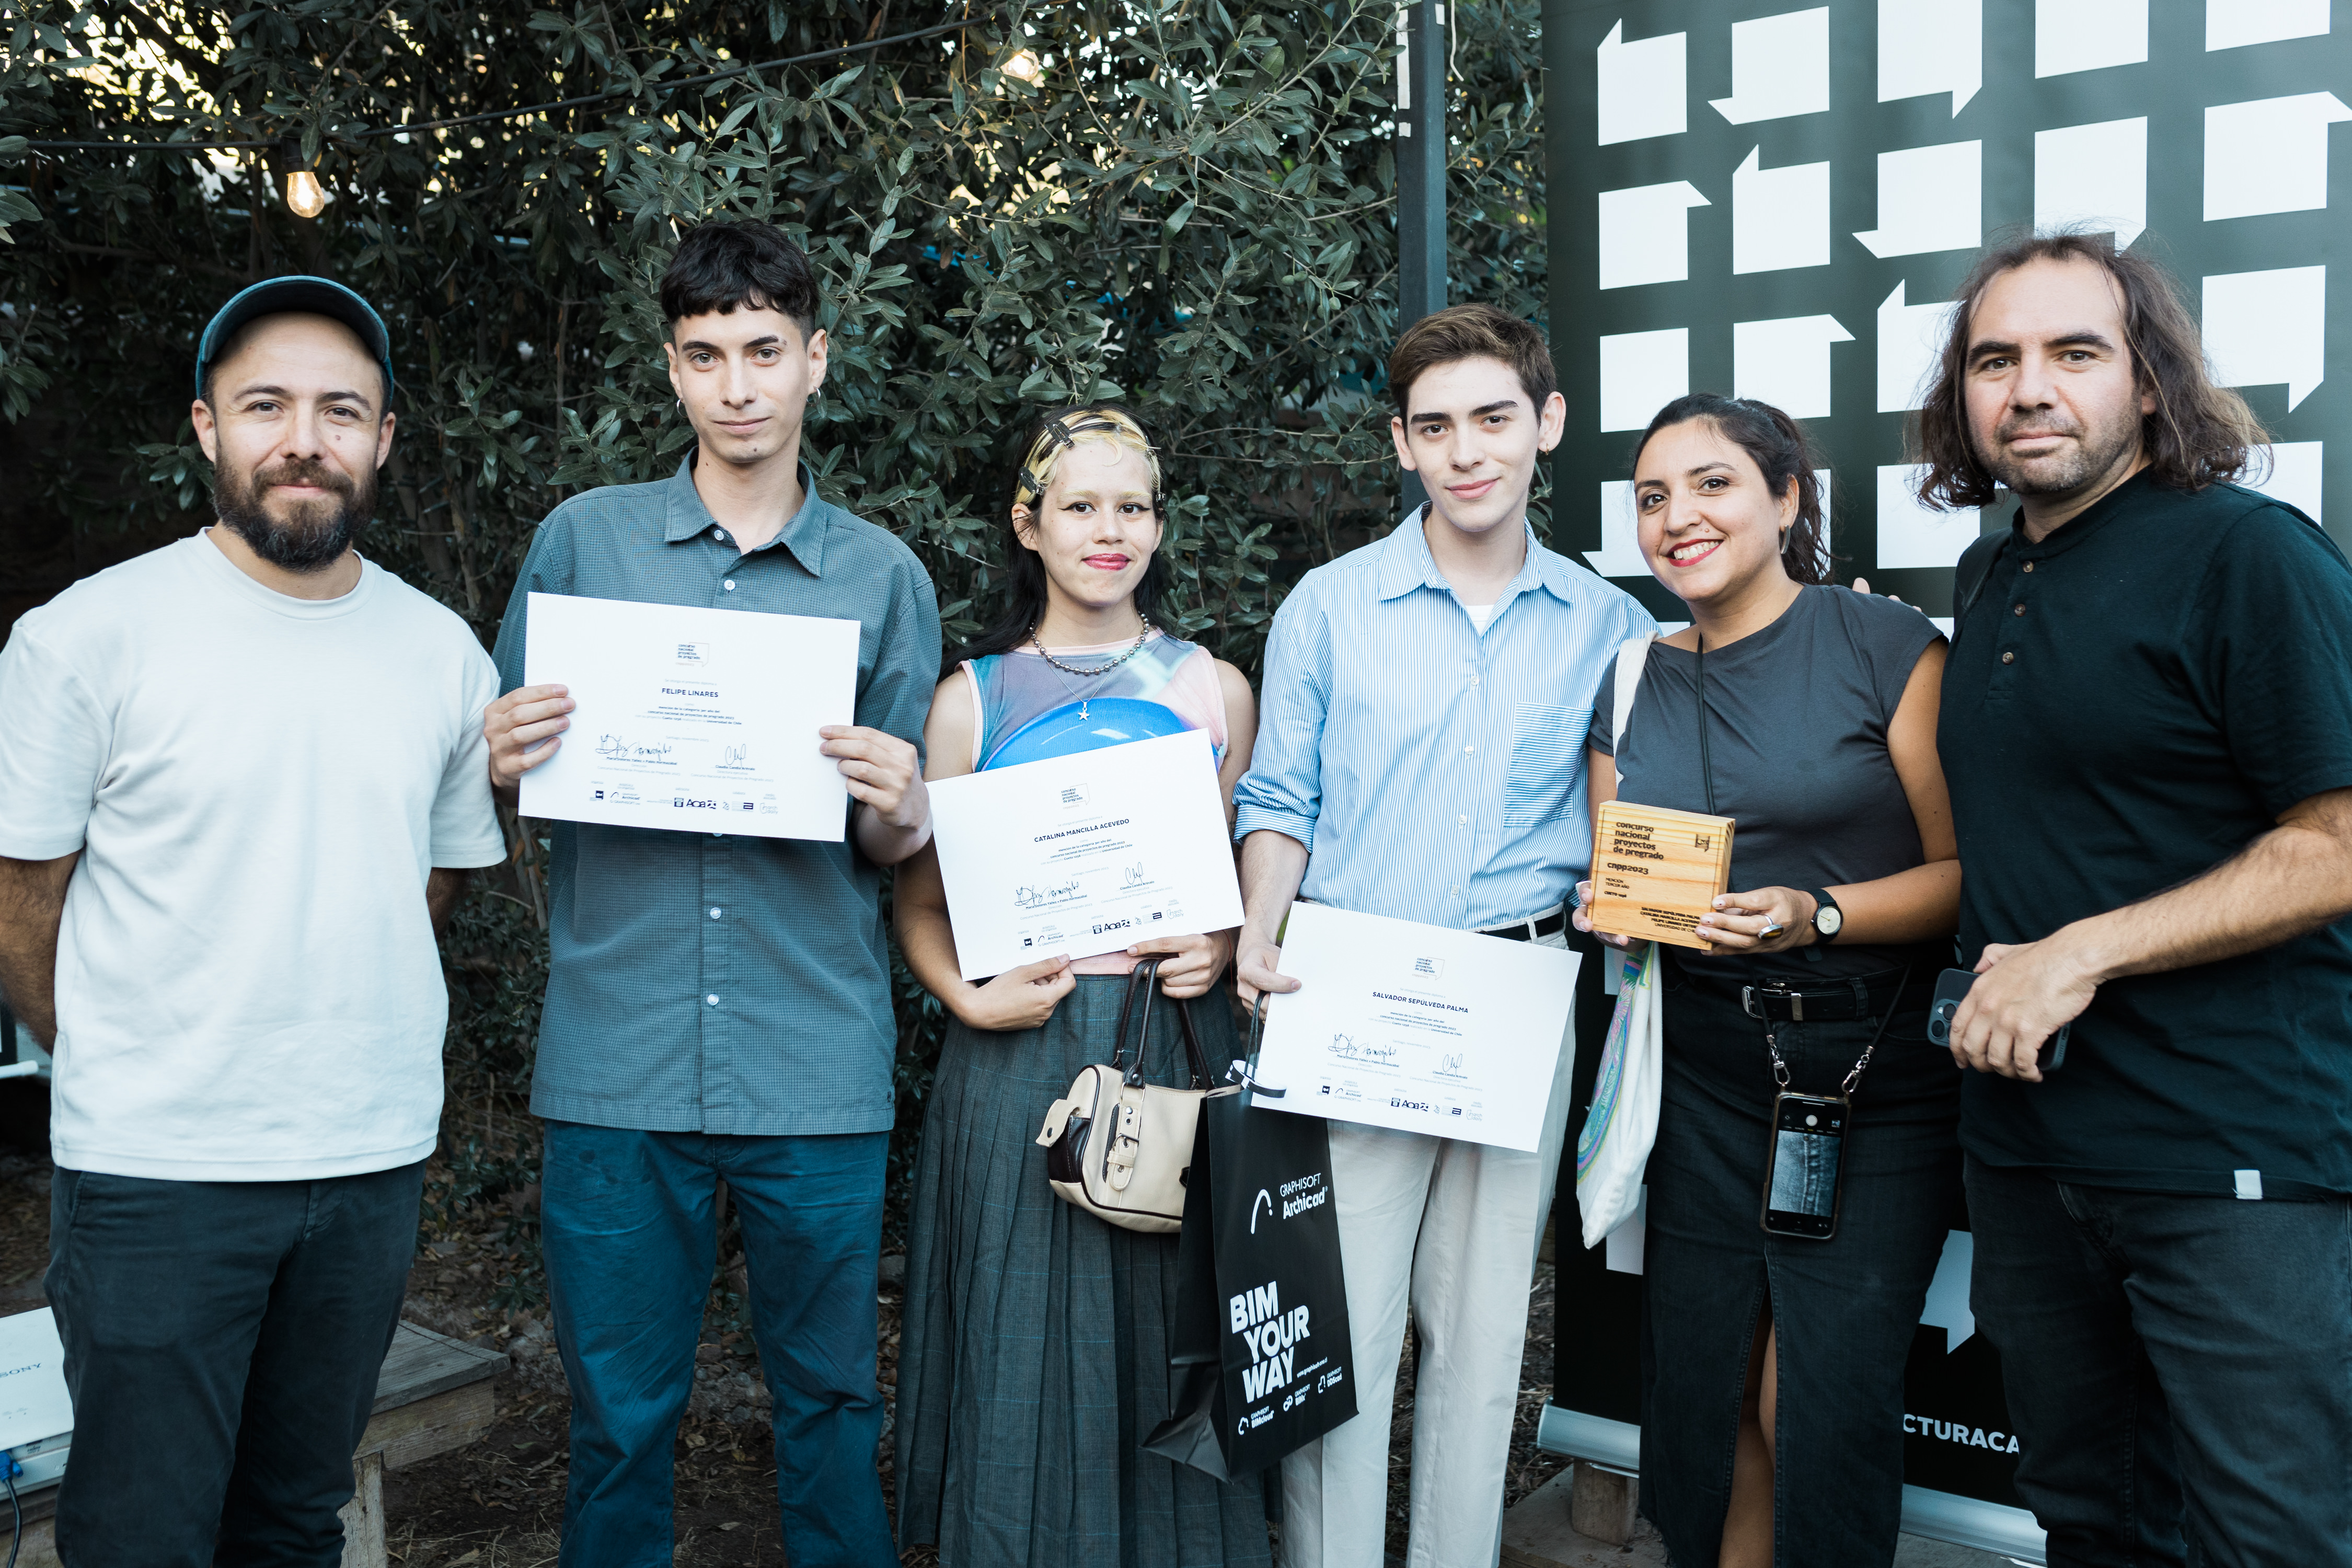 Proyecto asociado a Minvu Universidades obtiene reconocimiento en Concurso Arquitectura Caliente